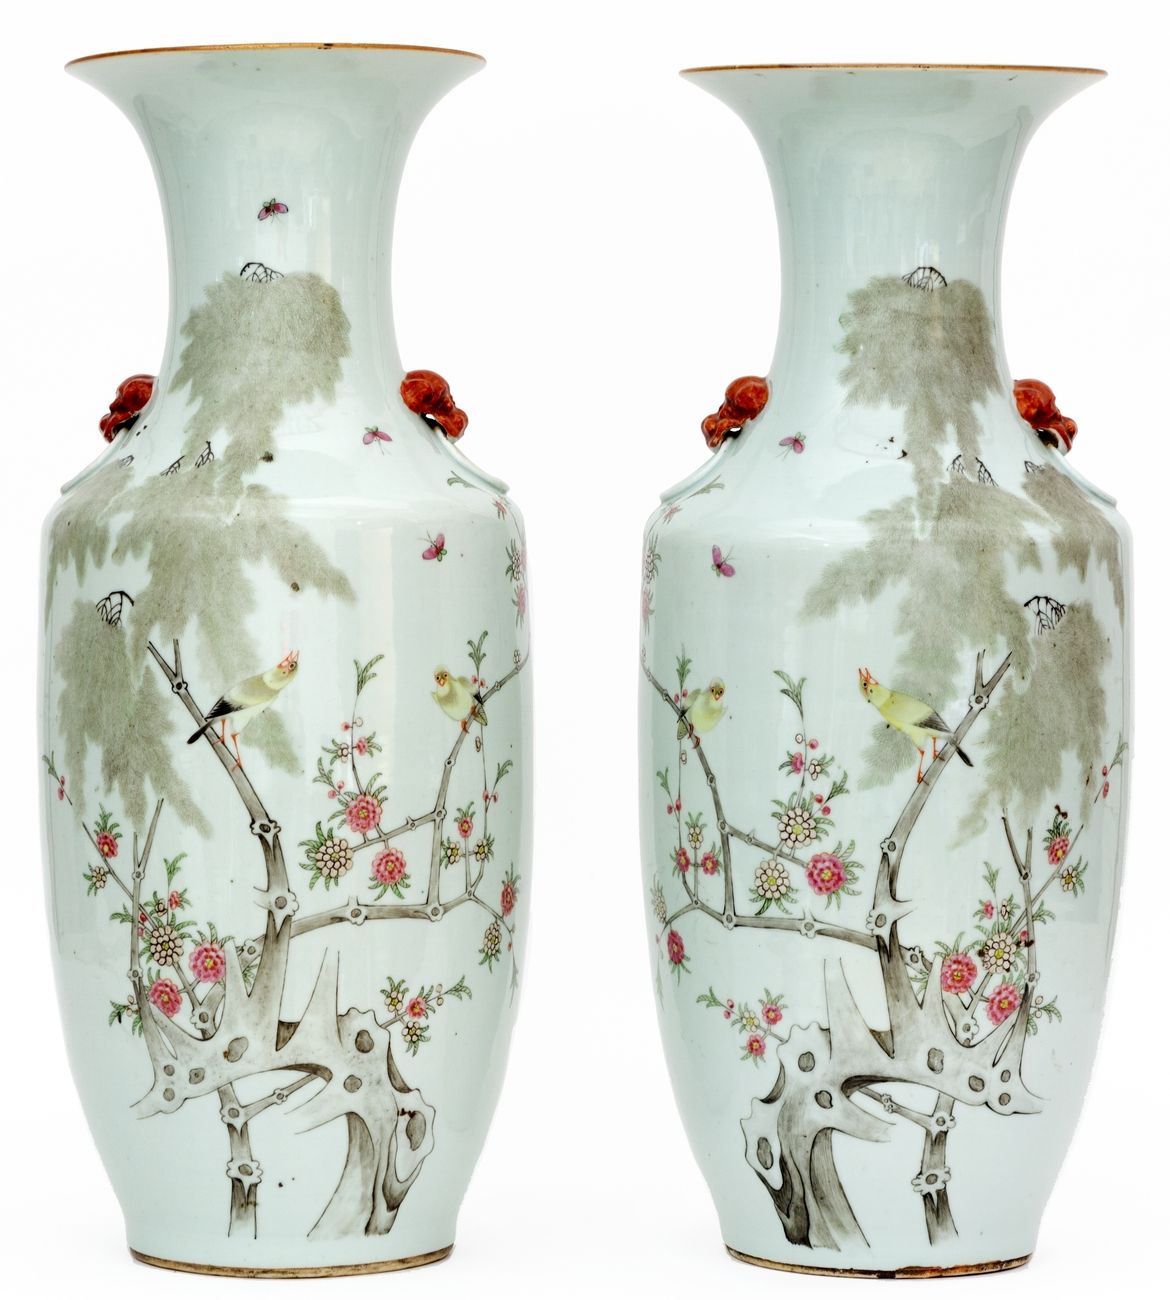 Null China, siglo XIX-XX
Pareja de jarrones de porcelana con decoración de pájar&hellip;